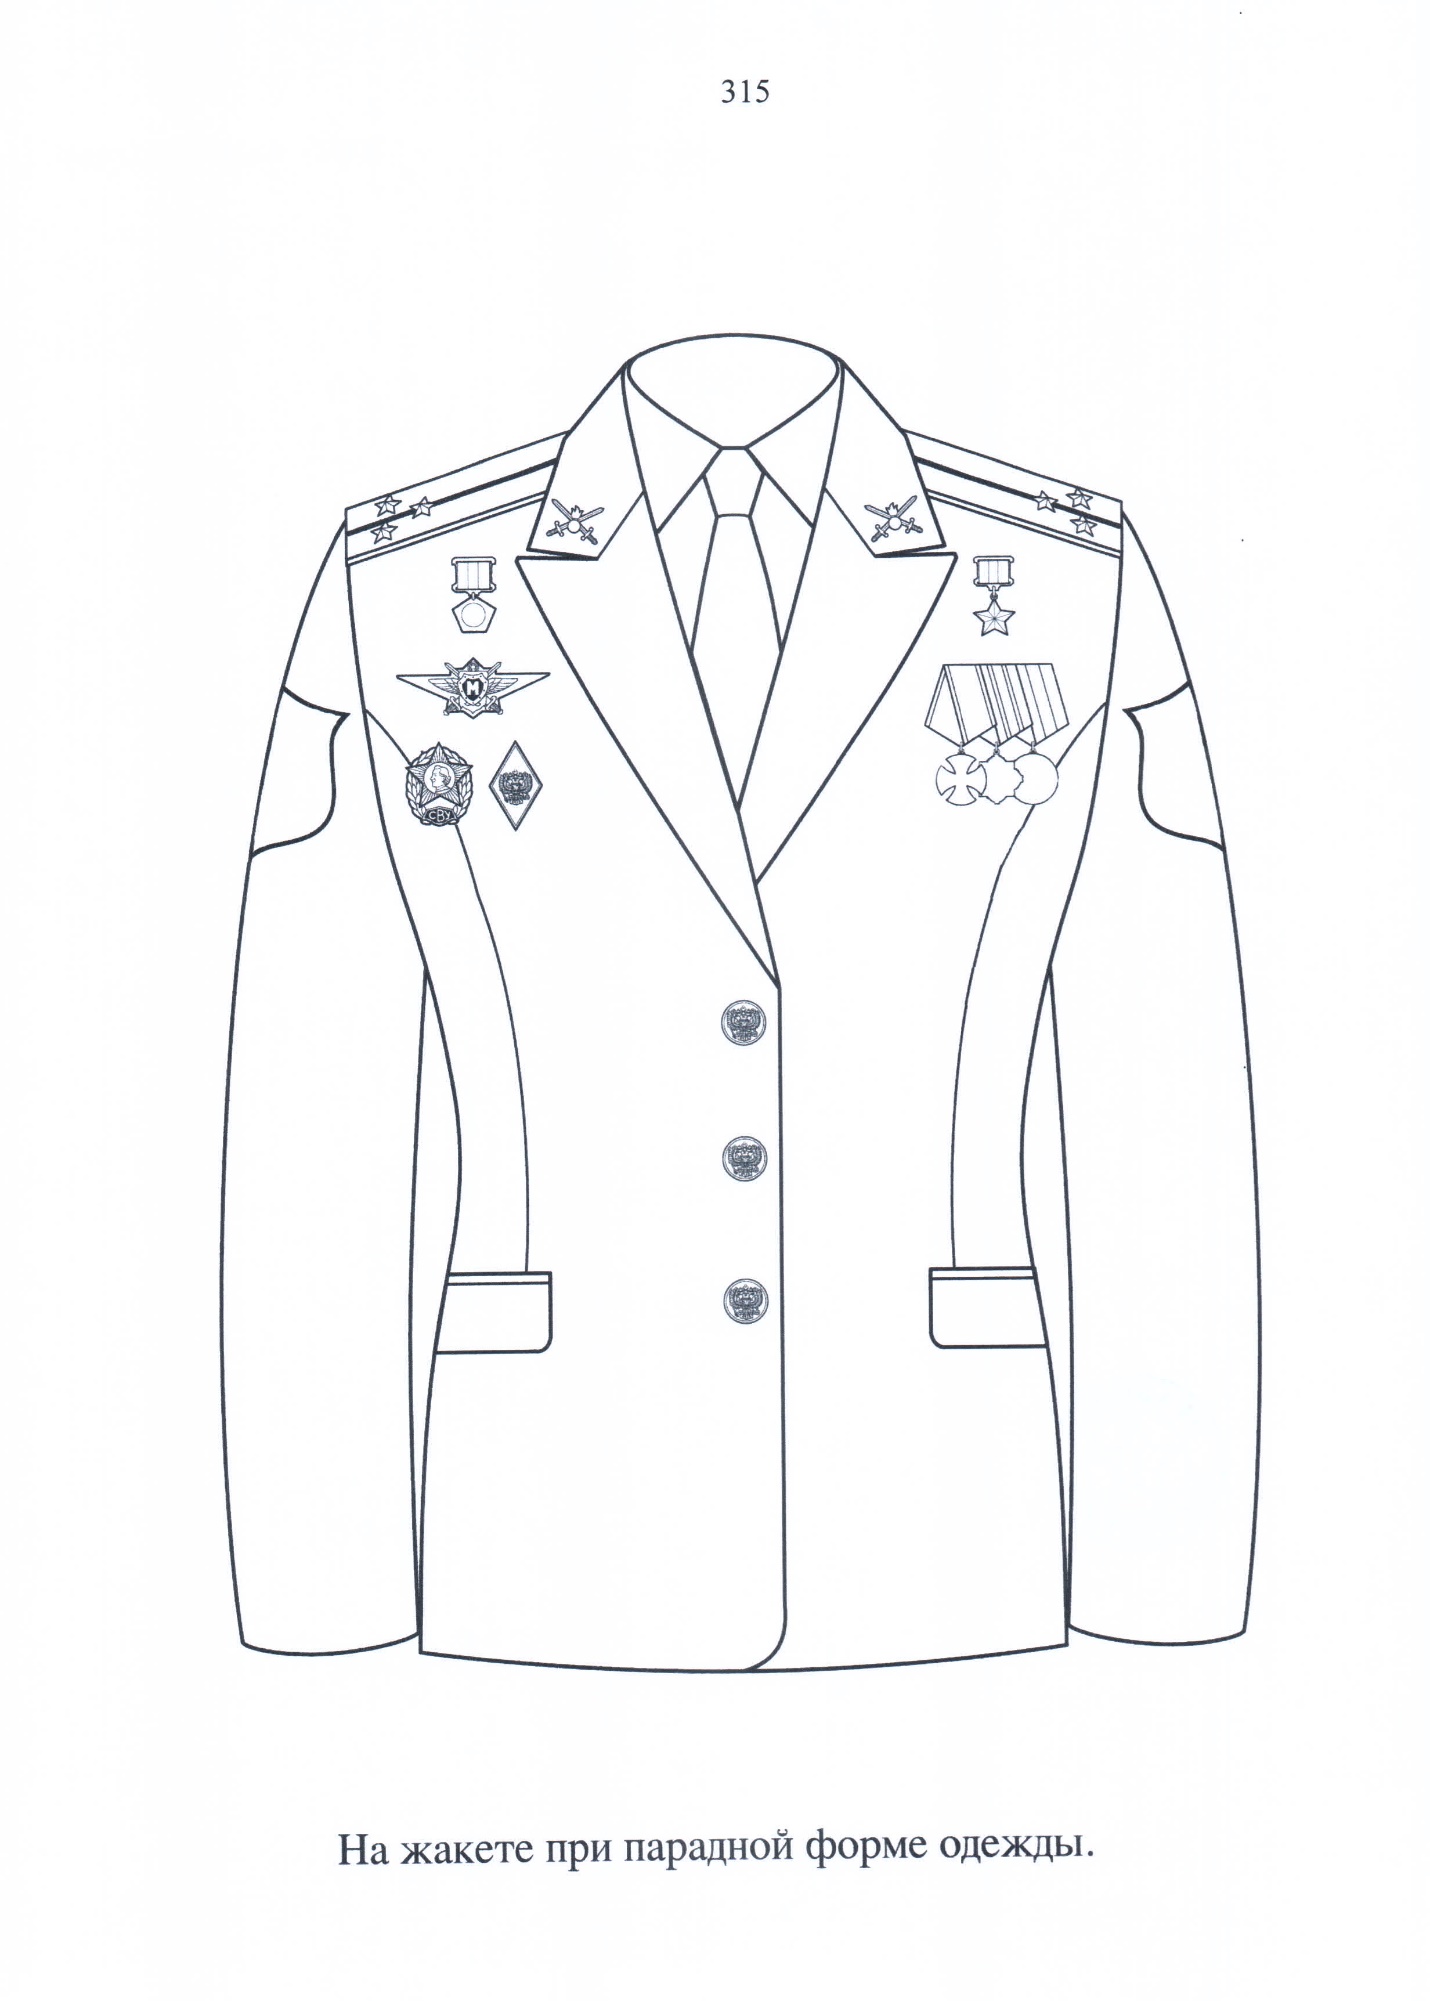 Положение формы одежды для кадетских классов